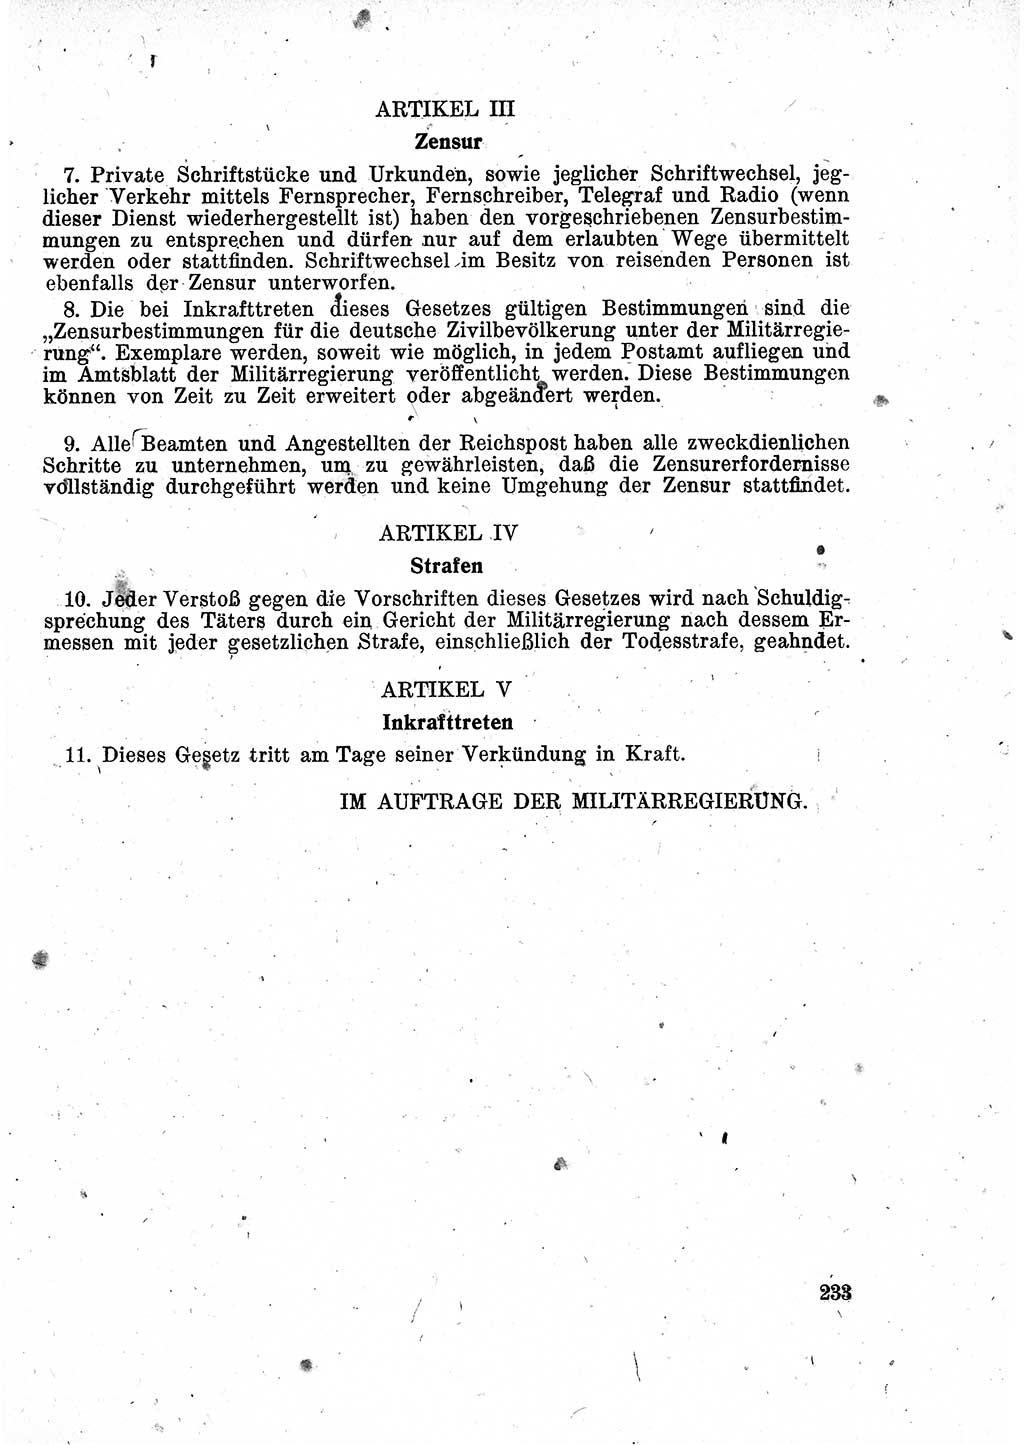 Das Recht der Besatzungsmacht (Deutschland), Proklamationen, Deklerationen, Verordnungen, Gesetze und Bekanntmachungen 1947, Seite 233 (R. Bes. Dtl. 1947, S. 233)